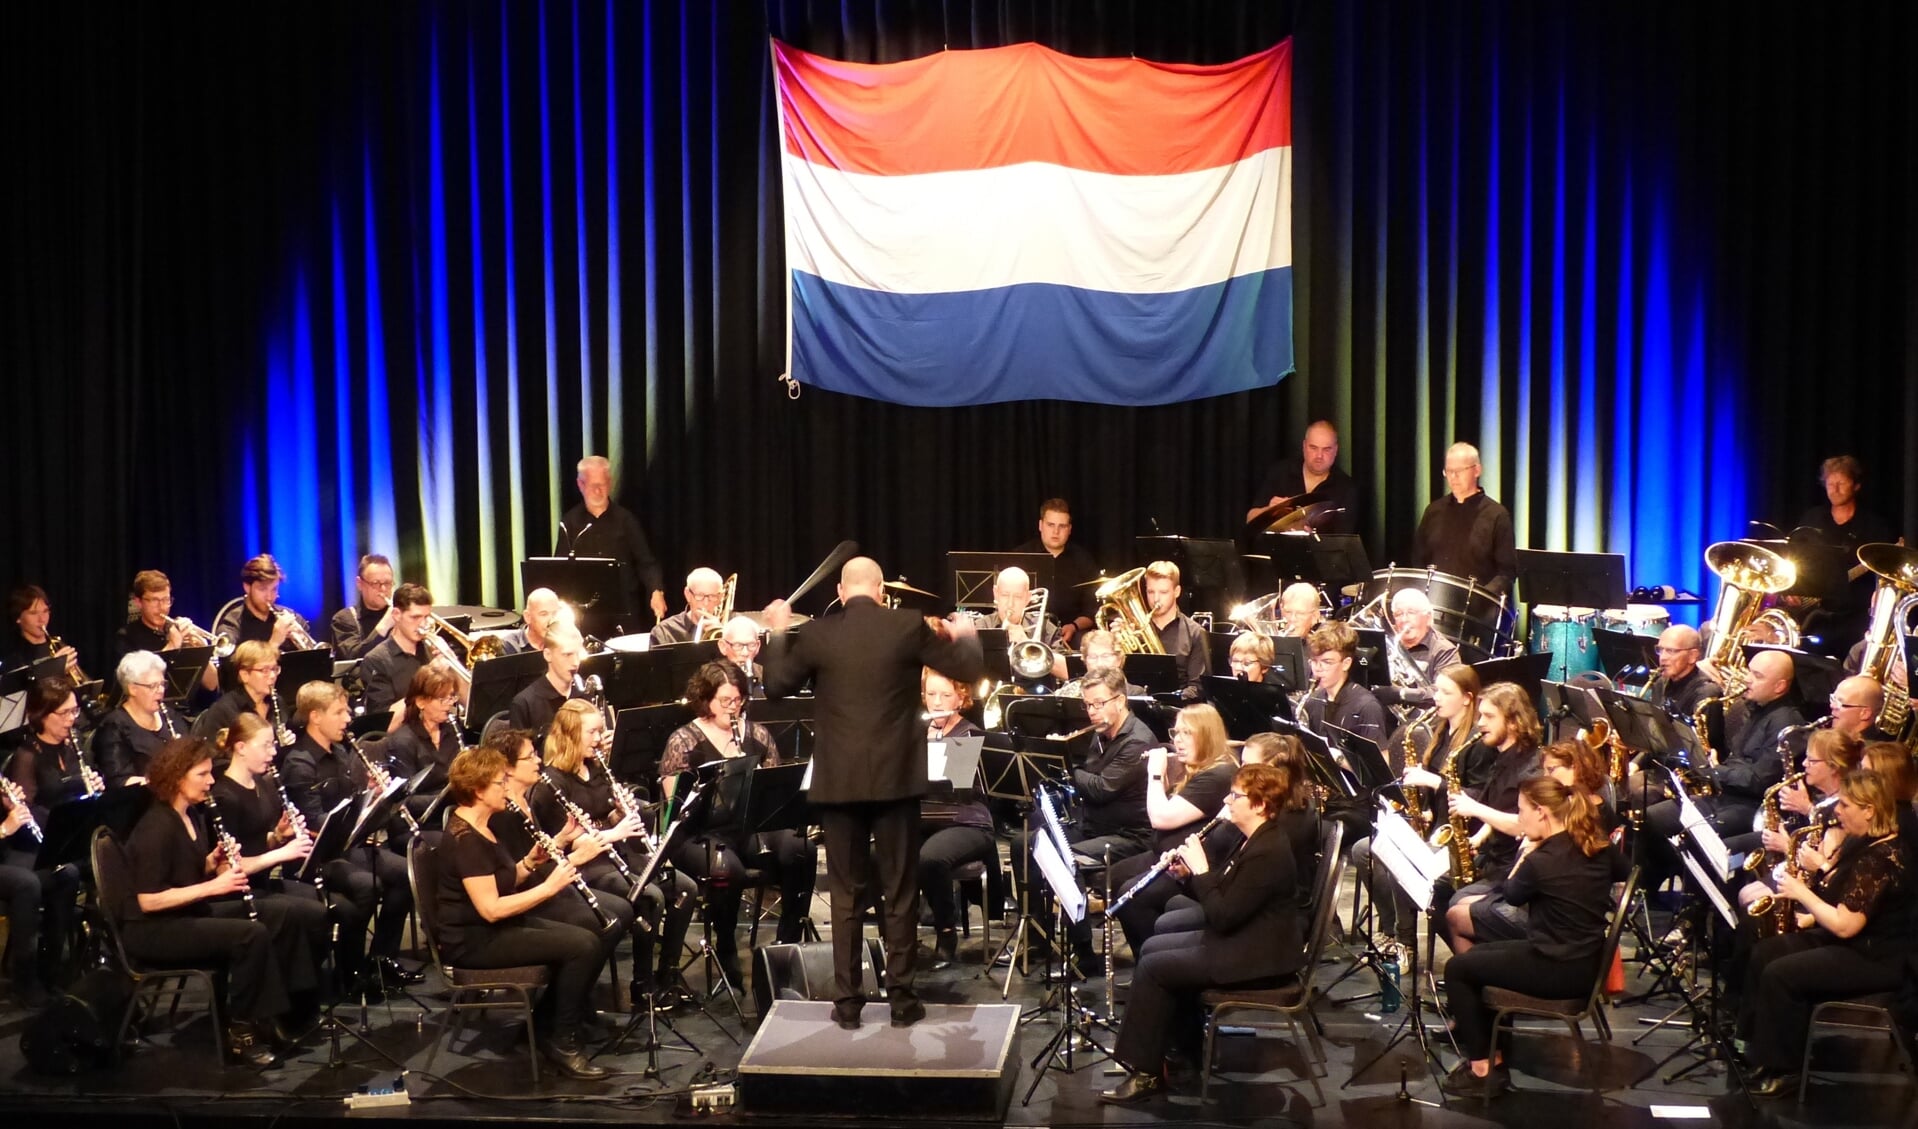 Bevrijdingsconcert in Mill gespeeld op 5 mei door muzikanten van drie verenigingen. (foto Willem Cranen)